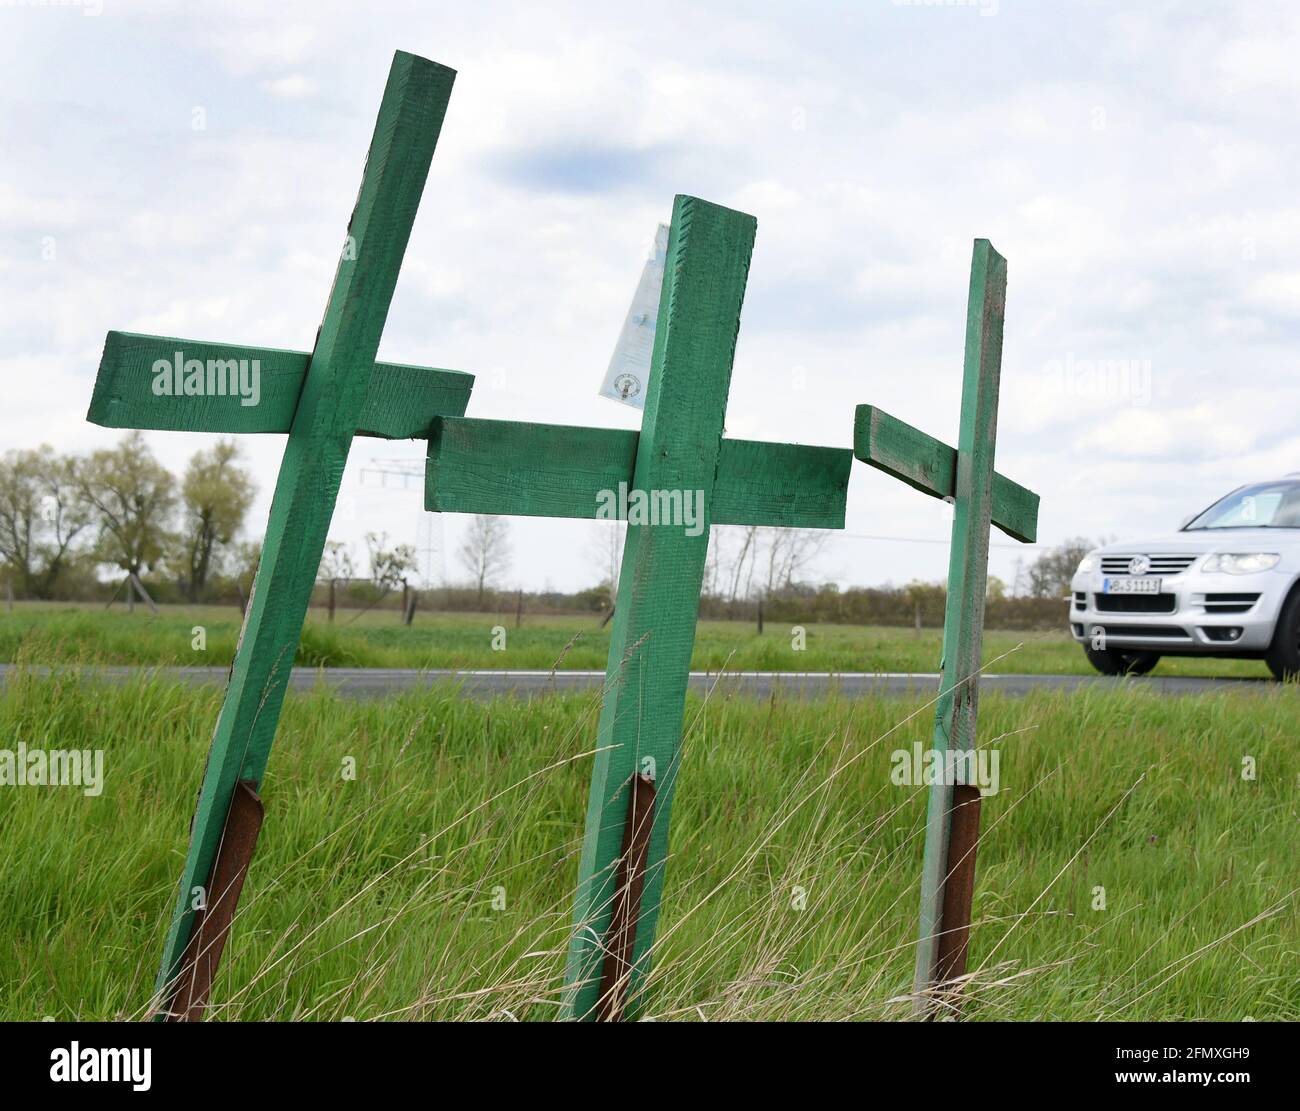 08. Mai 2021, Sachsen-Anhalt, Landstraße: Drei grüne Kreuze stehen auf  einer Landstraße in der Nähe von Oranienbaum. Die Errichtung der grünen  Holzkreuze ist eine Protestaktion der Bauern gegen die Regelungen in der